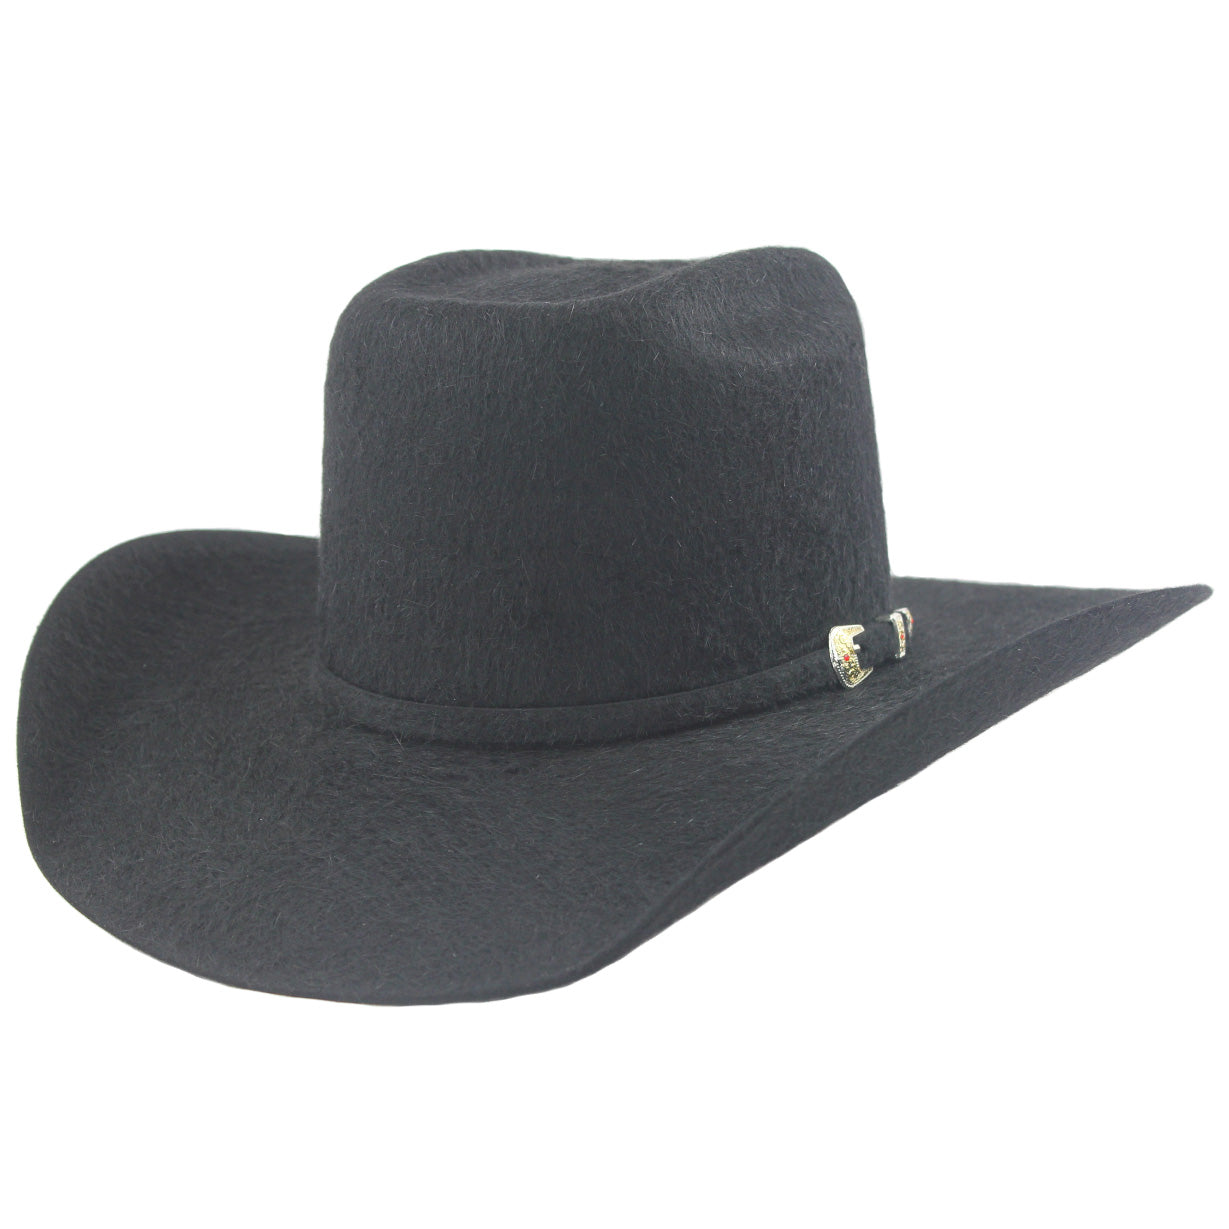 Cuernos Chuecos 30x Black Grizzly Felt Cowboy Hat